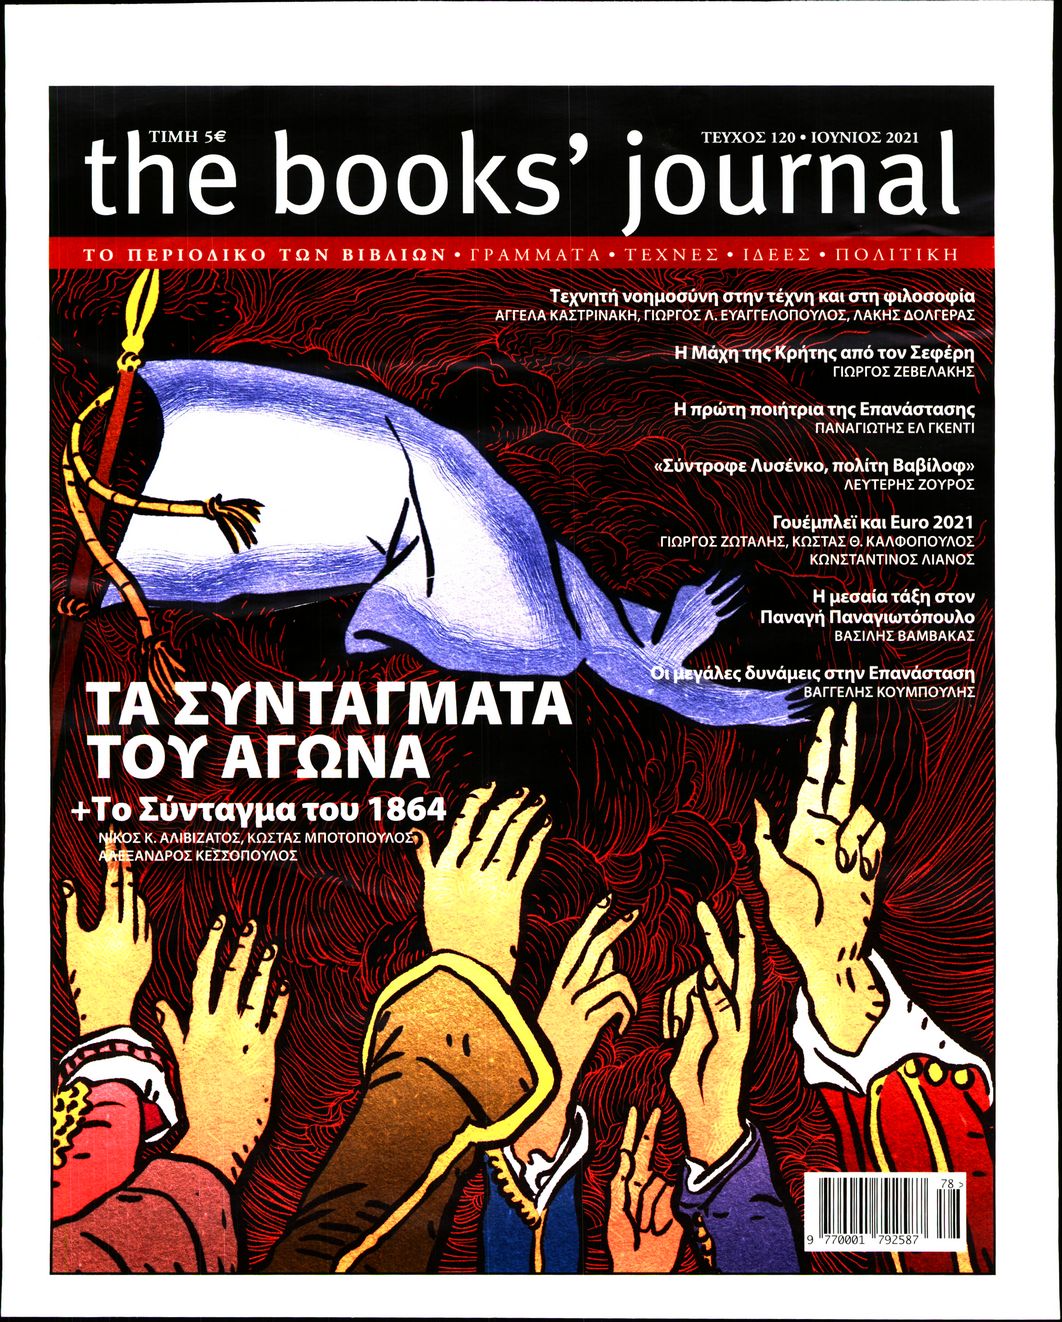 Πρωτοσέλιδο του εντύπου «THE BOOKS JOURNAL» που δημοσιεύτηκε στις 01/06/2021